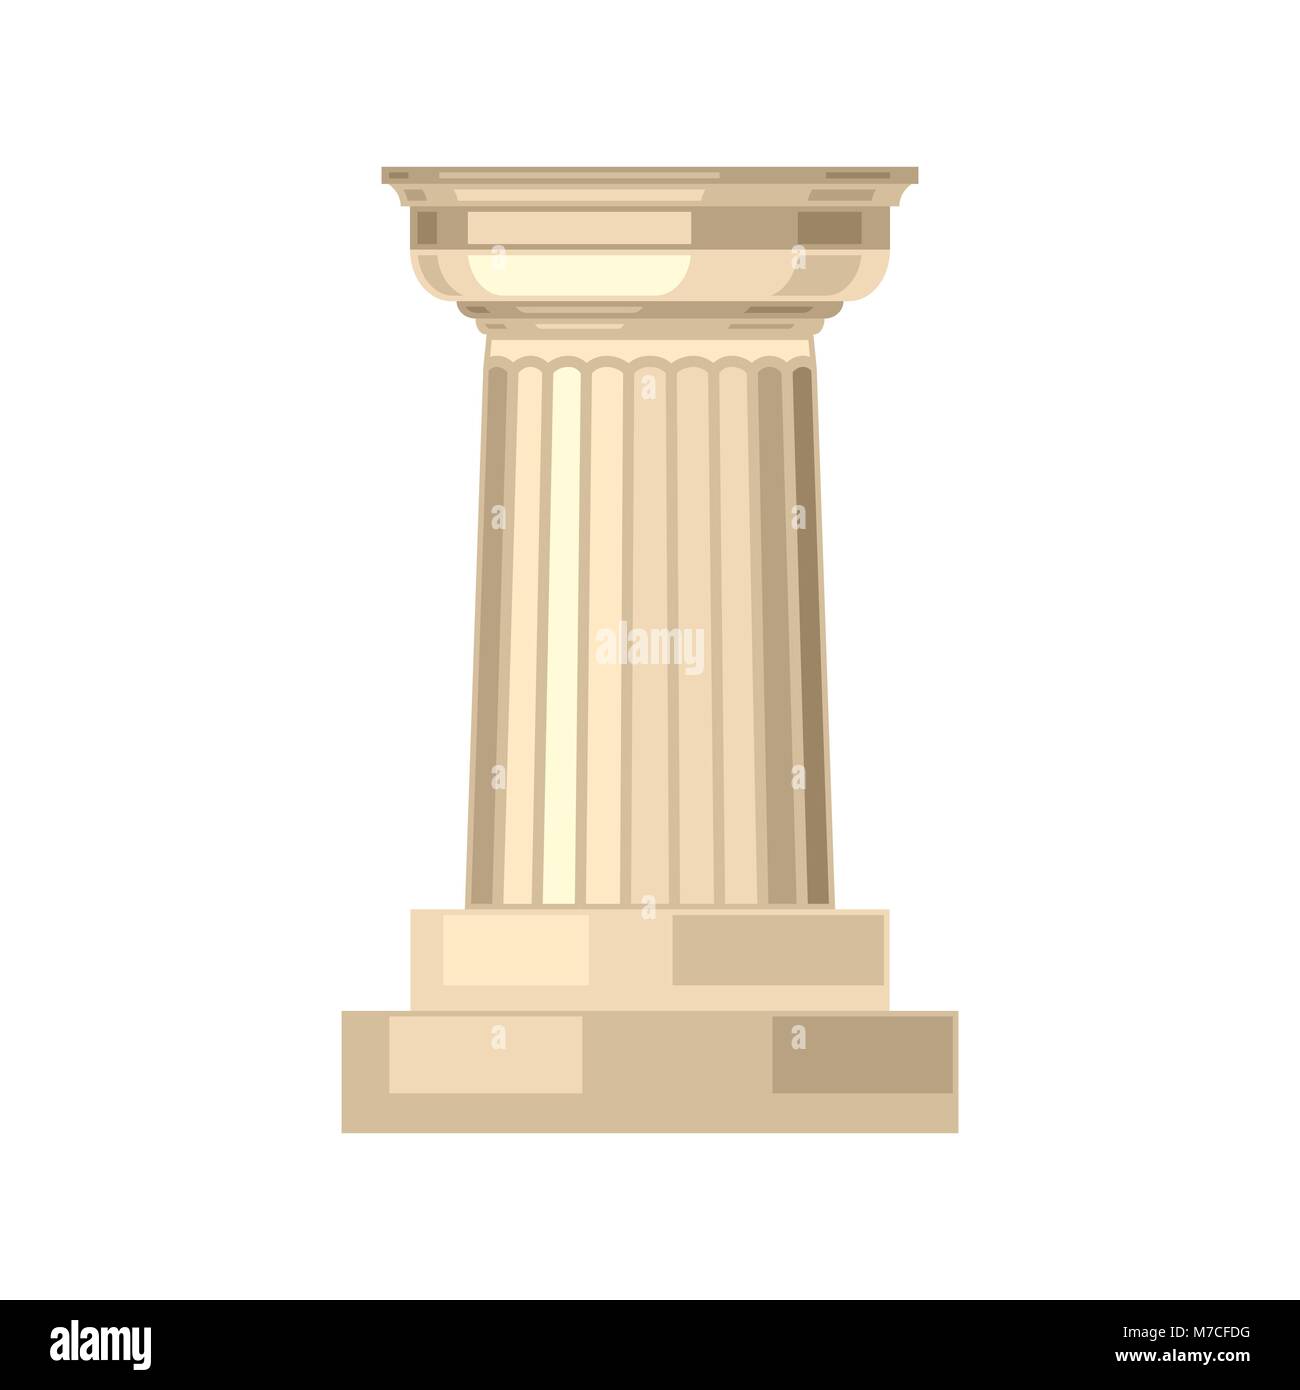 Realistico dorico greco antico colonna di marmo isolato Illustrazione Vettoriale